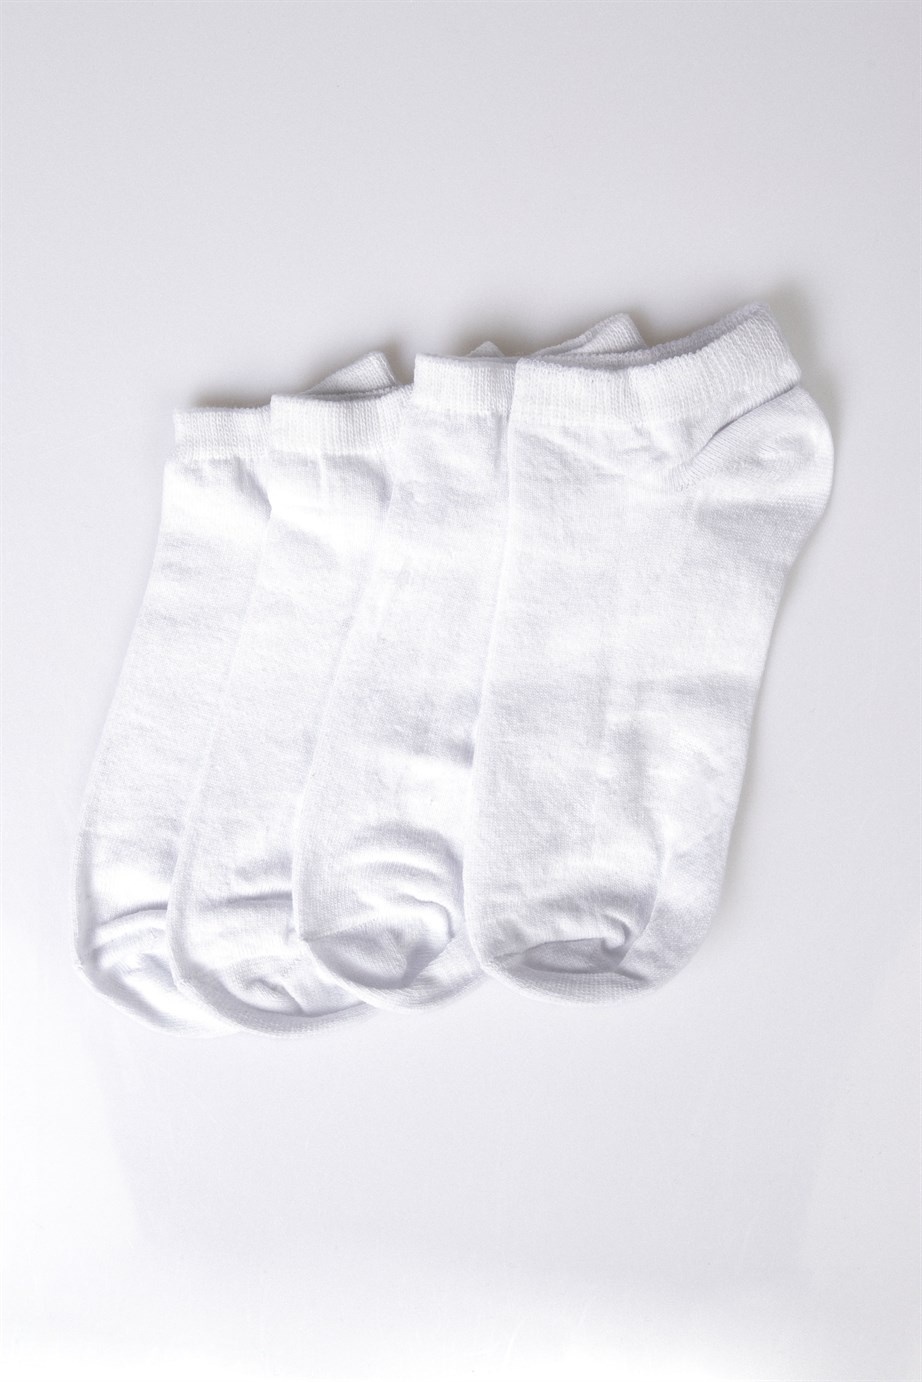 Plain White Socks